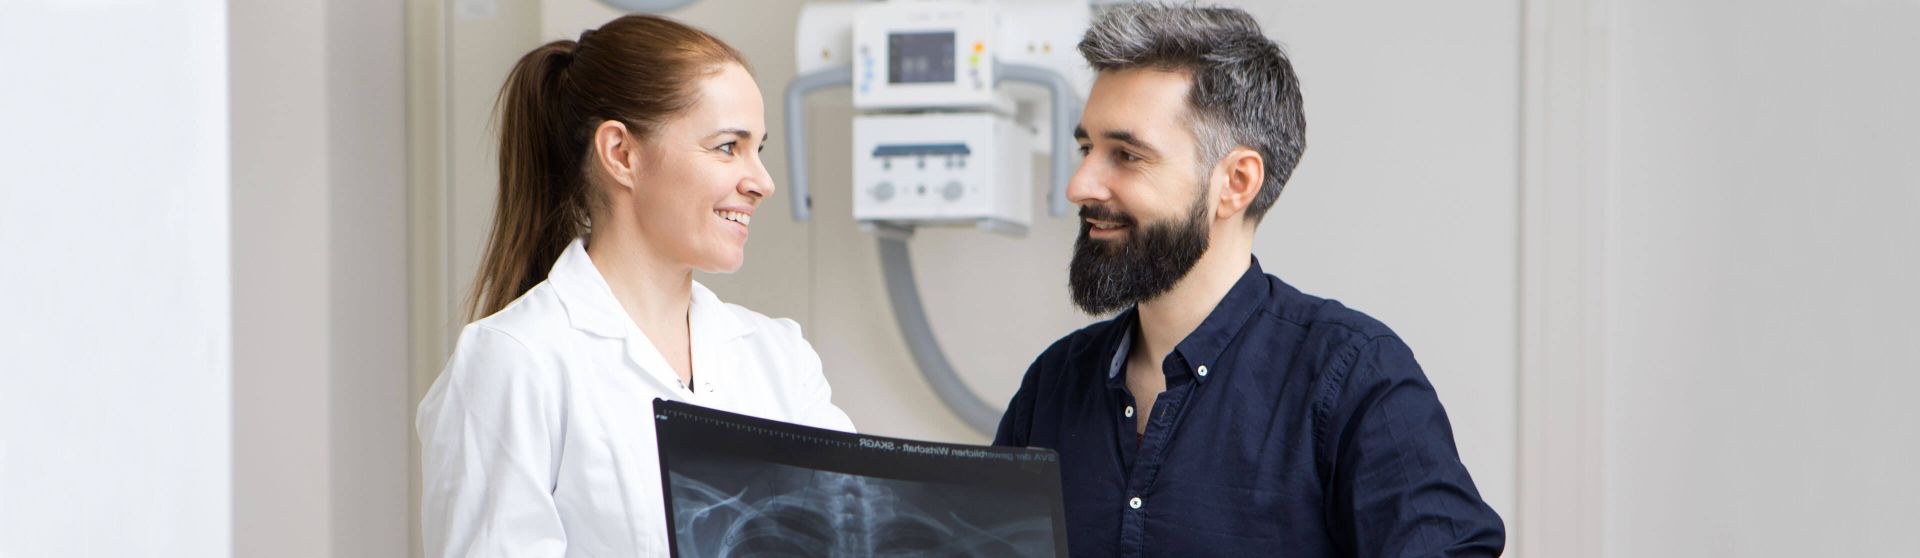 Radiologin erklärt einem Patienten eine Röntgenaufnahme.